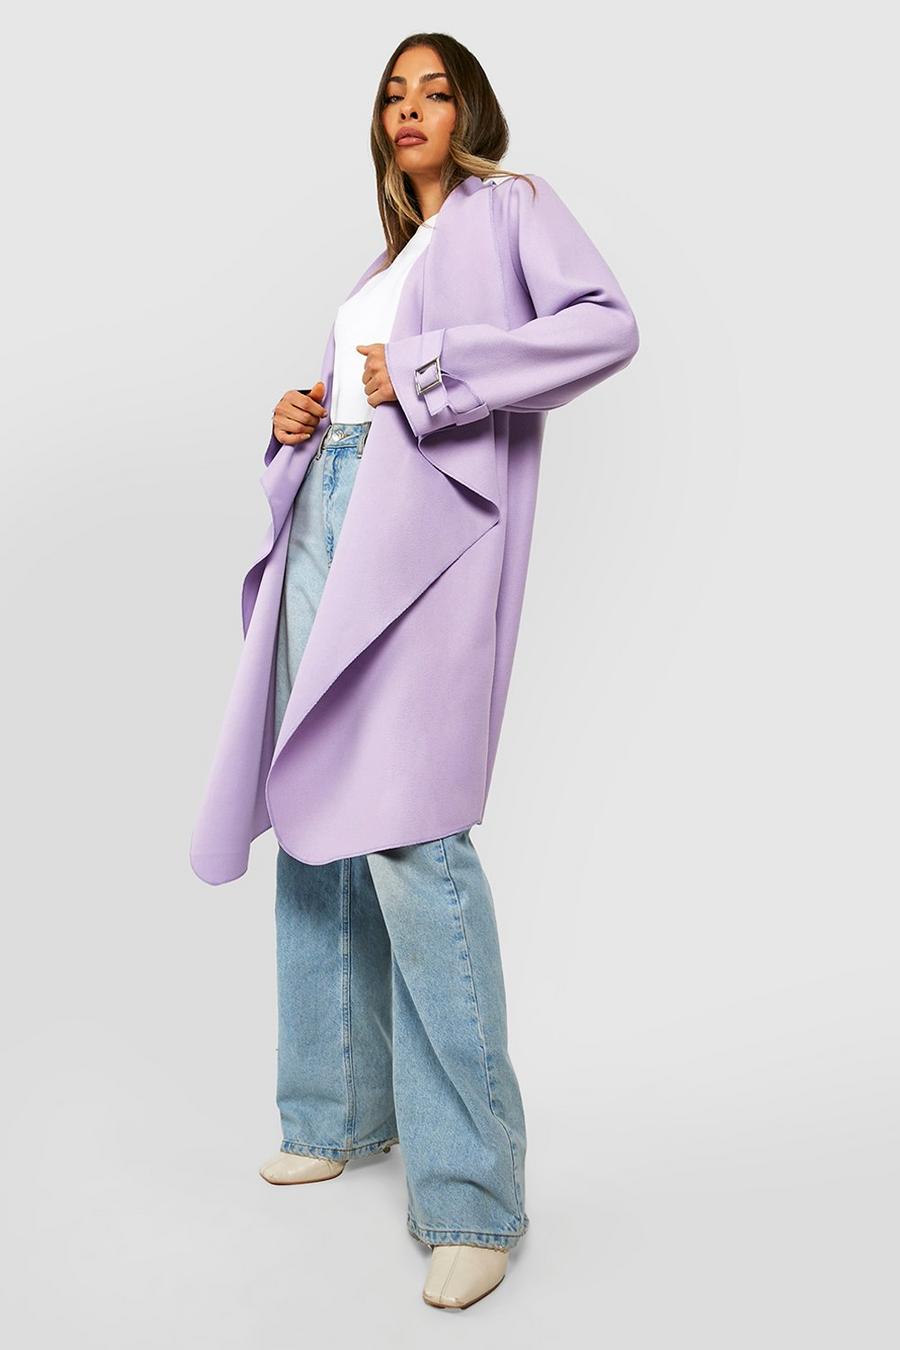 Mantel mit Wasserfall-Kragen und Bündchen-Detail, Lilac violett